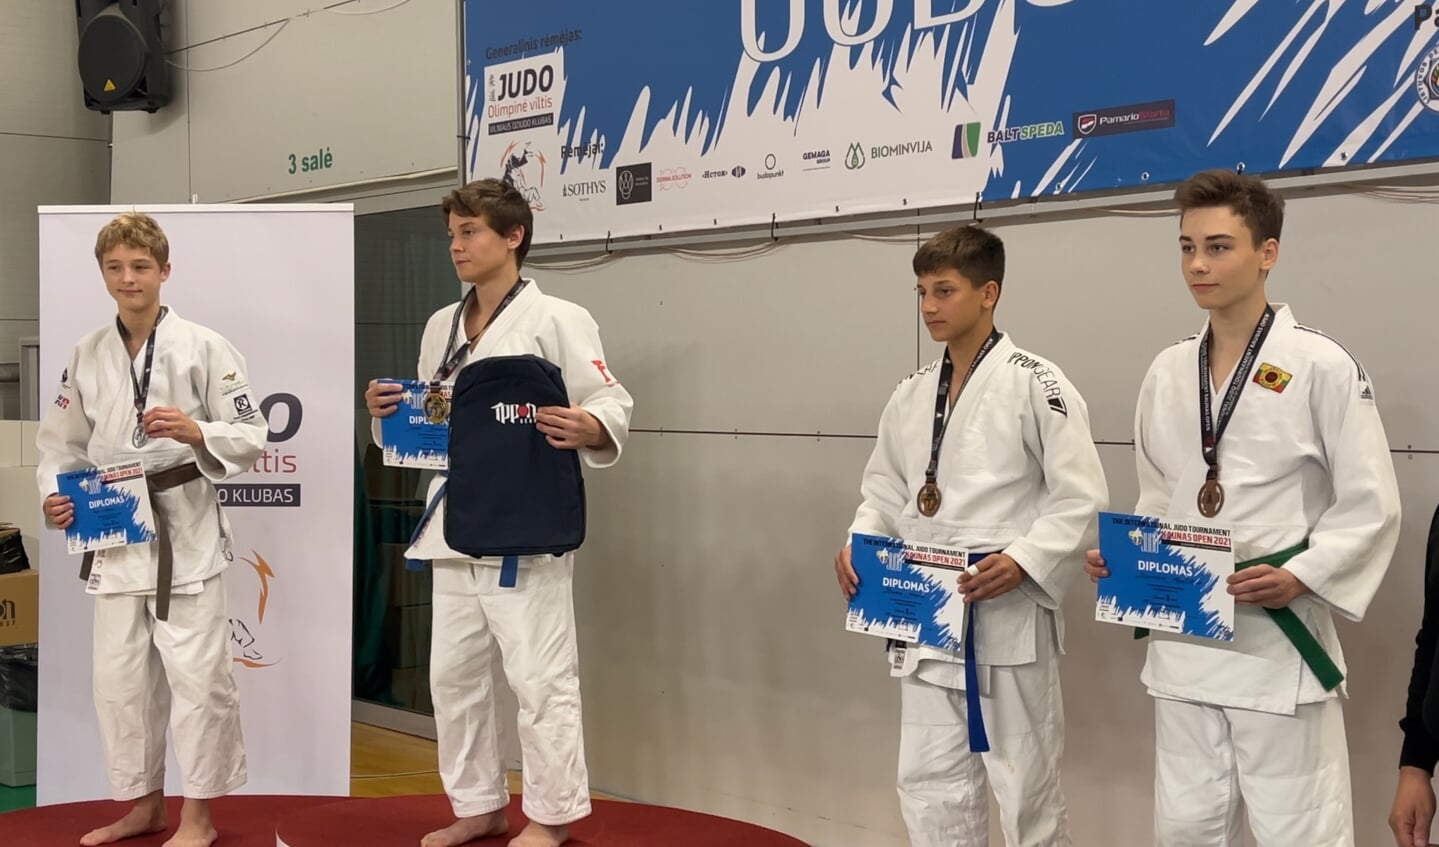 Judoka Inno Loeber, links op de foto, wint zilver bij de Kaunas Open in Litouwen 